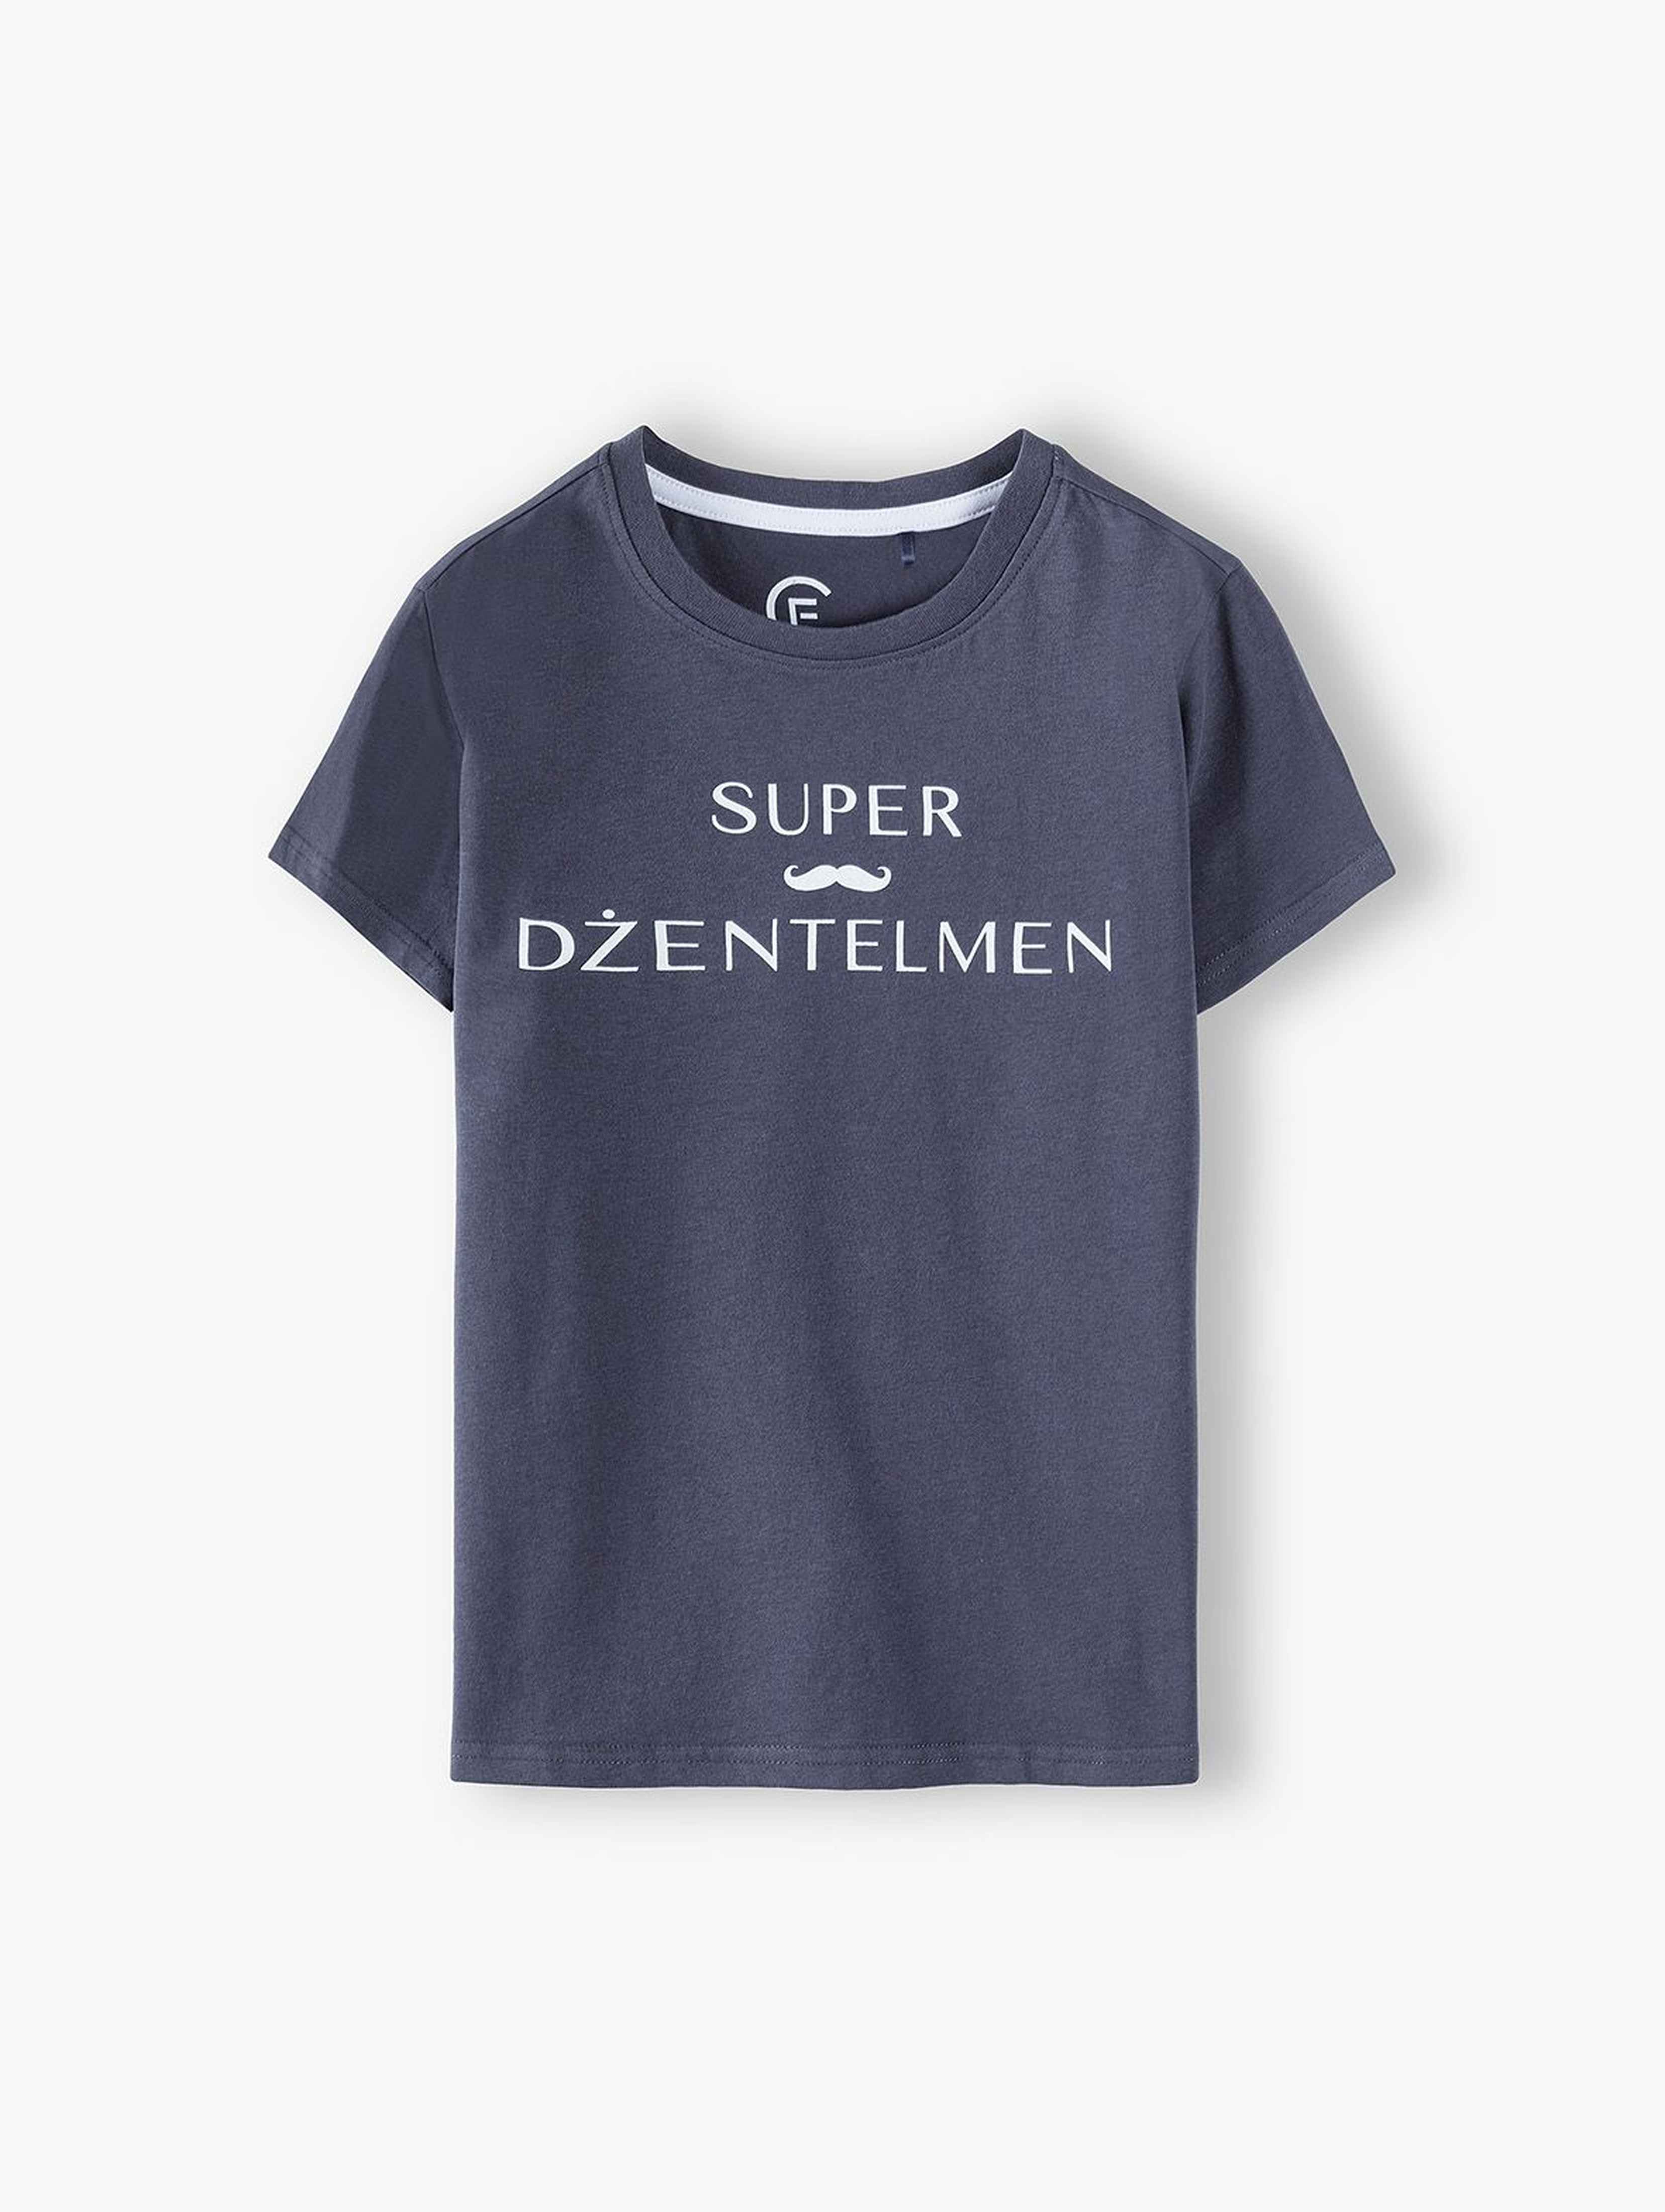 Bawełniany t-shirt chłopięcy- Super Dżentelmen